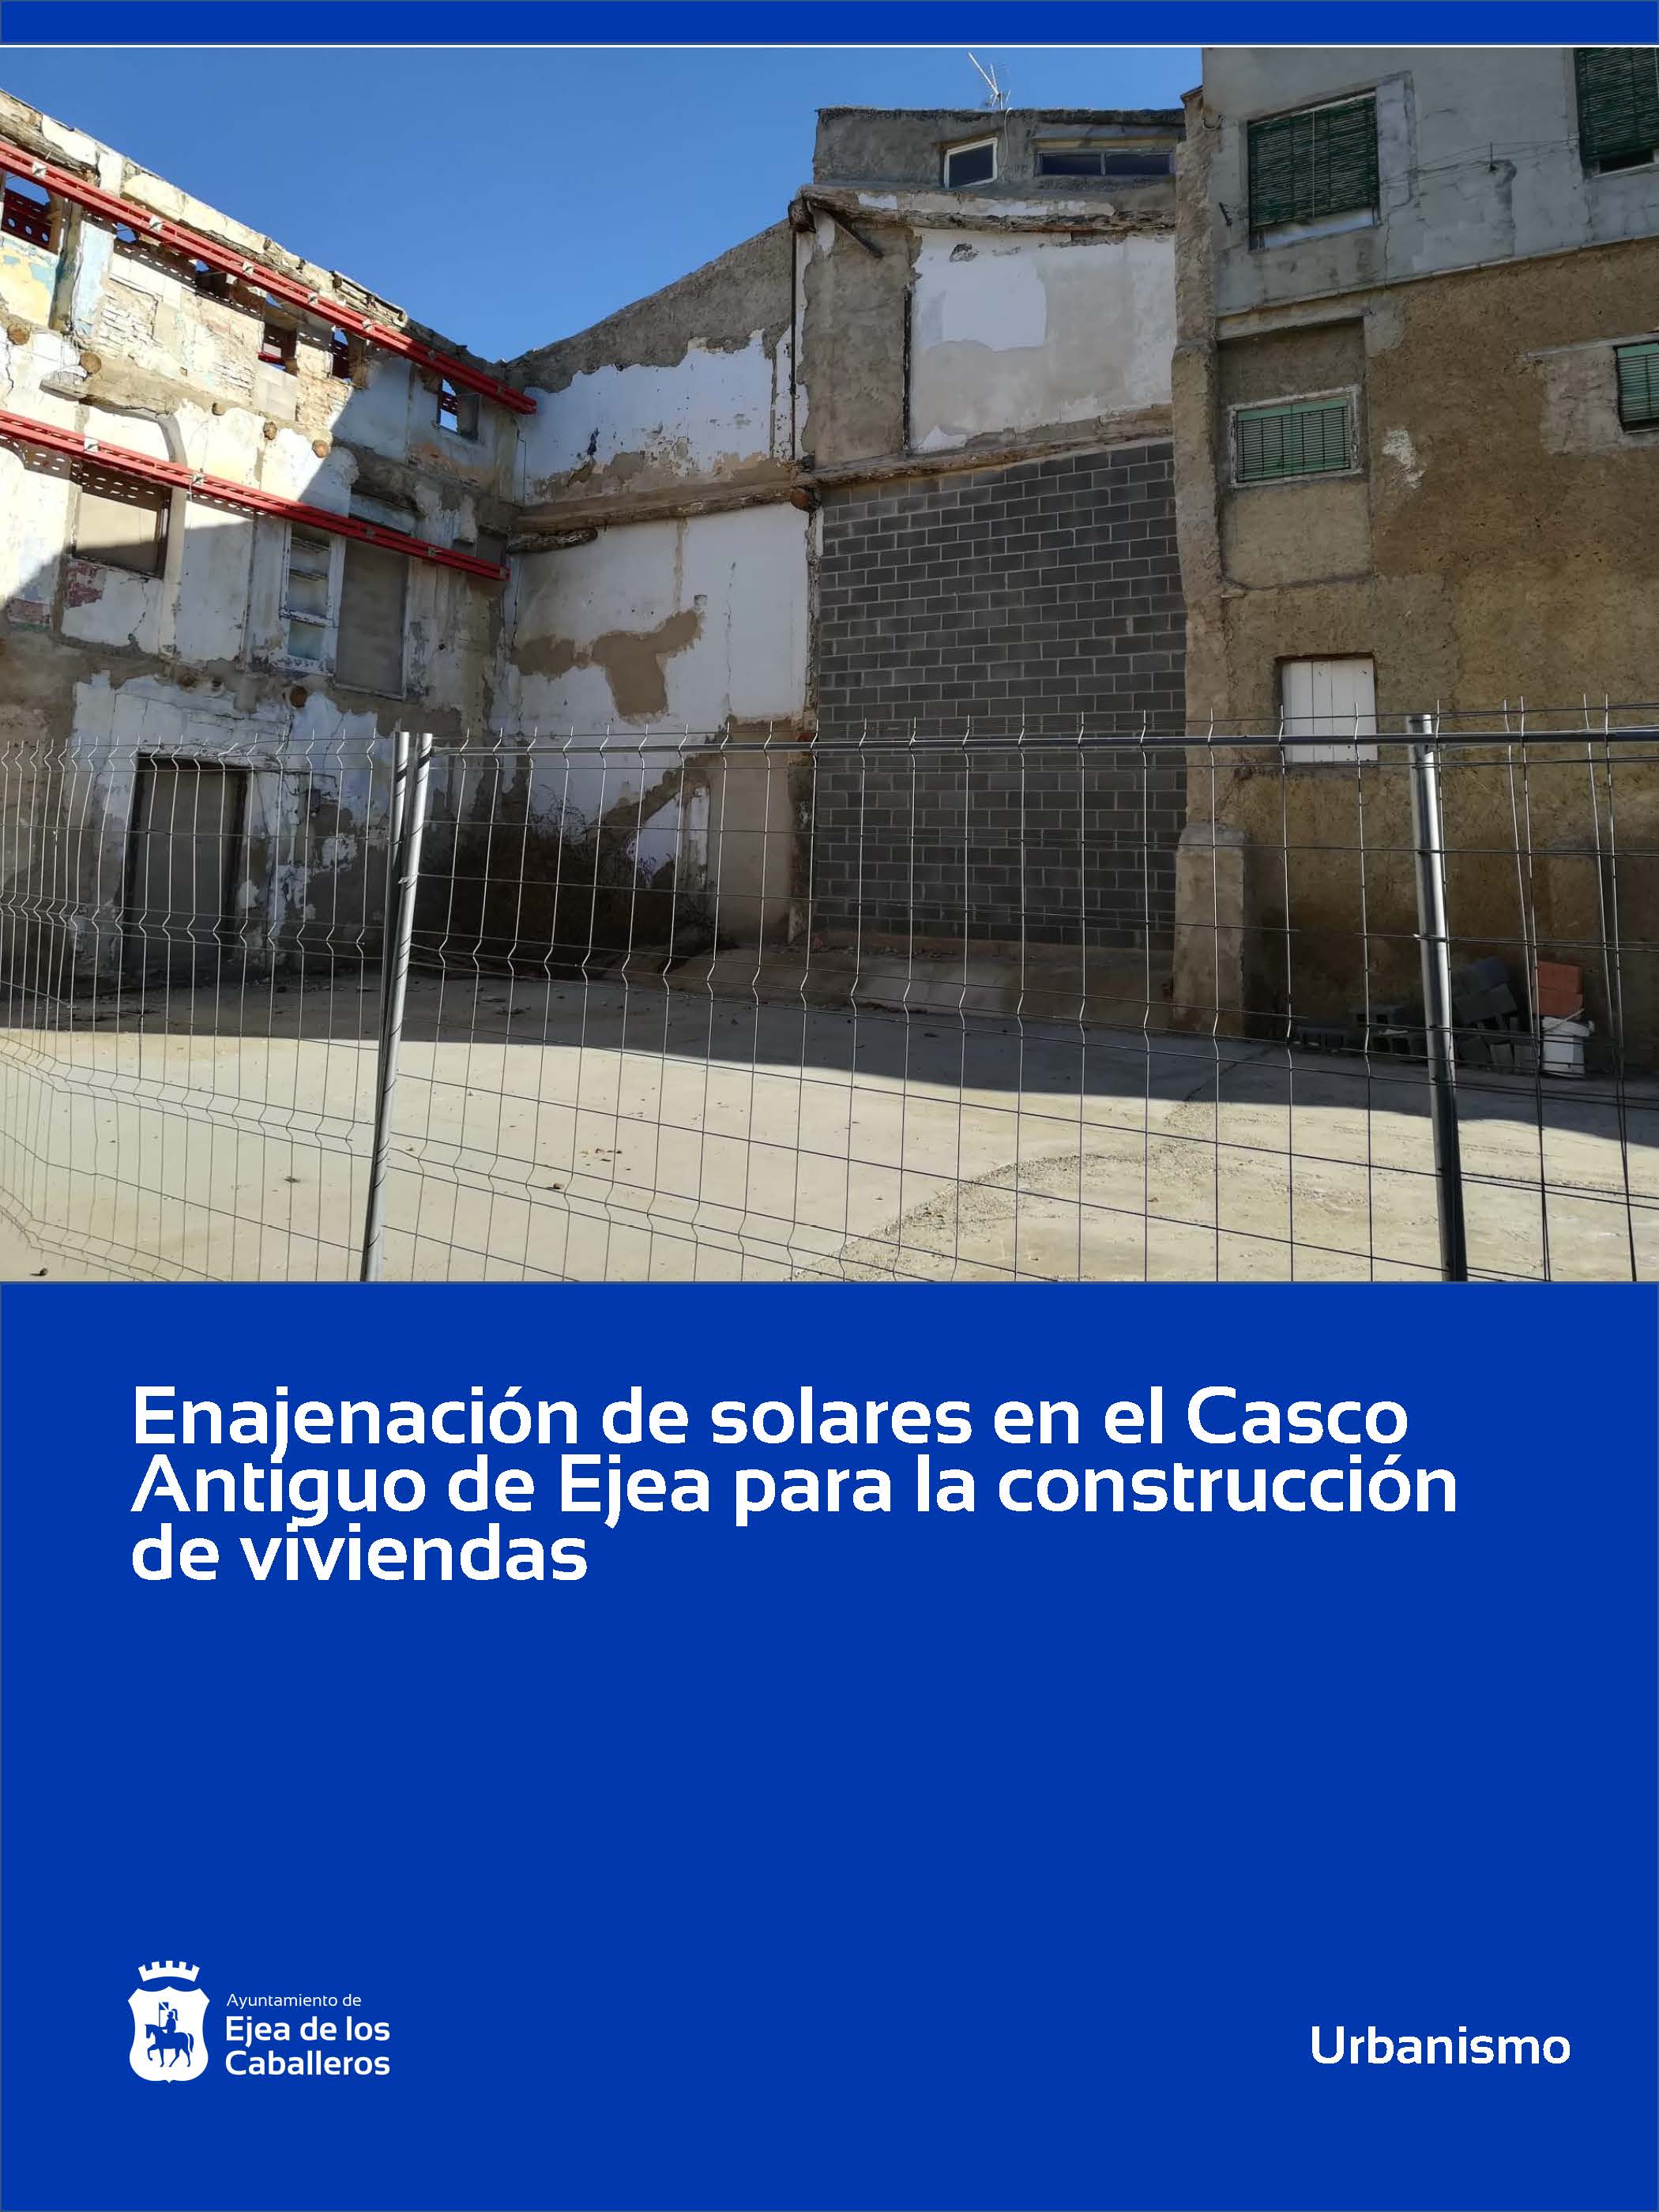 En este momento estás viendo Enajenación de solares en el Casco Histórico de Ejea para construcción de viviendas